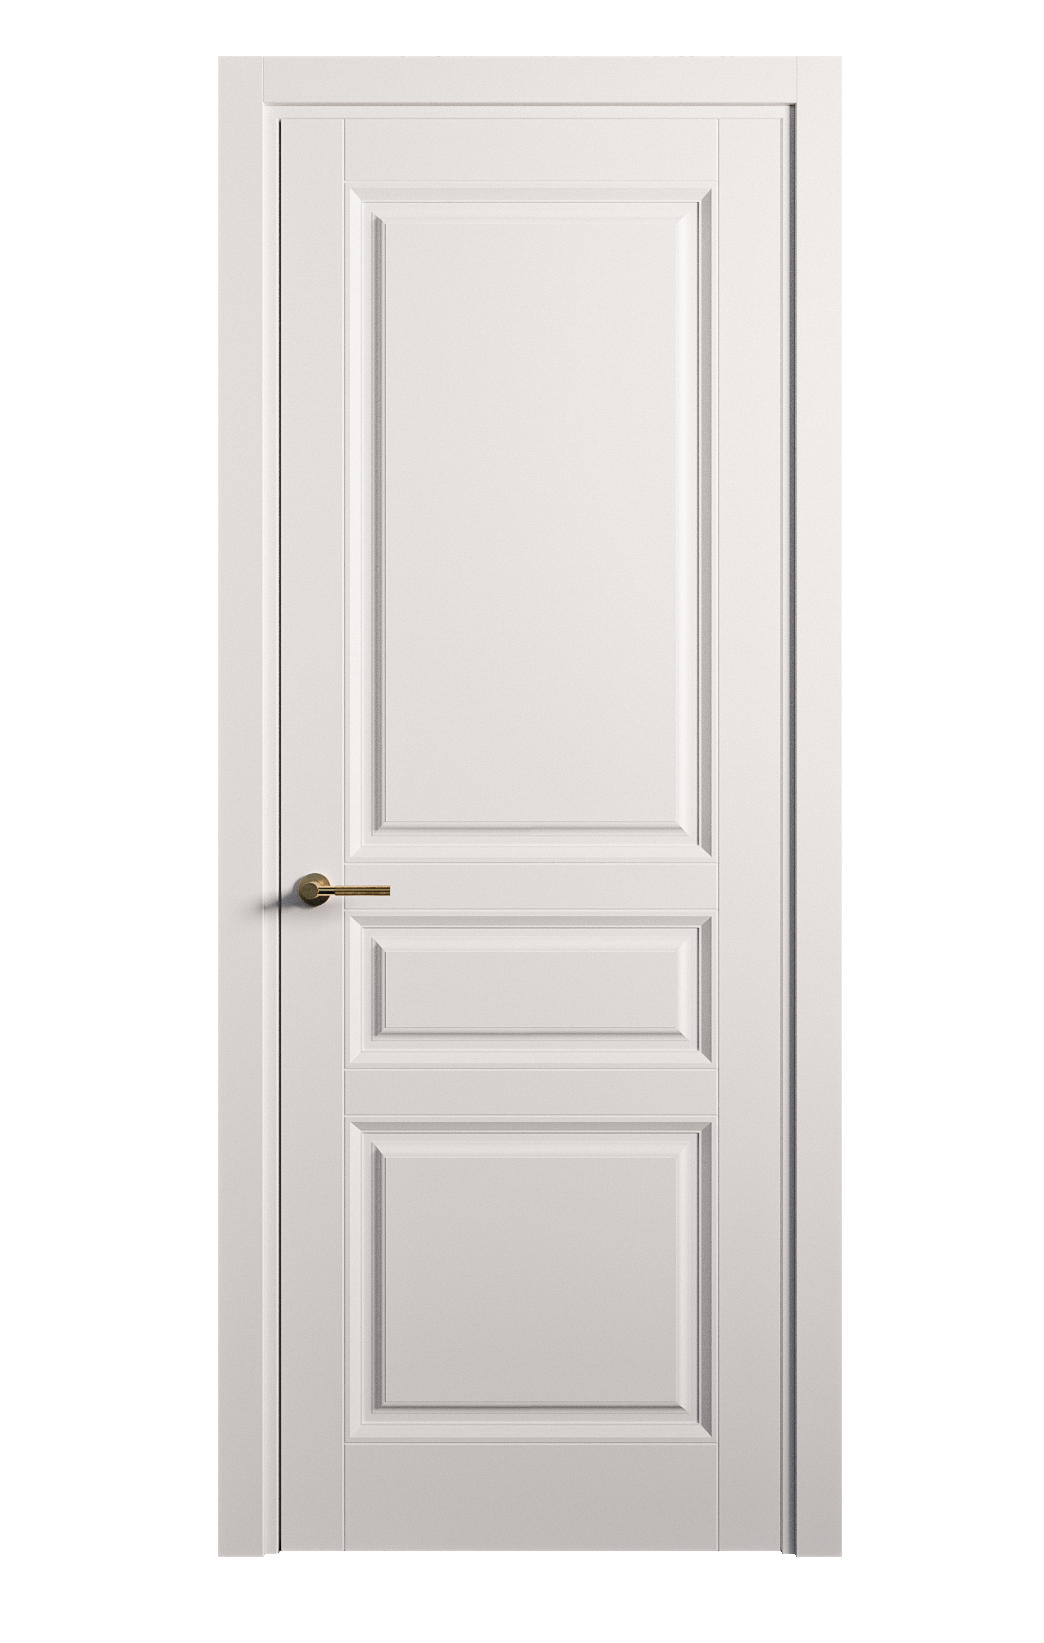 Межкомнатная дверь Venezia-2 глухая эмаль ral 9003 25749